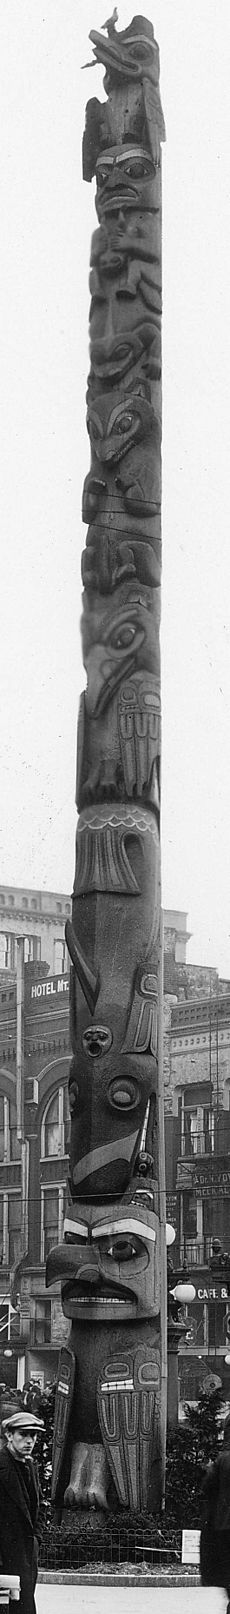 Original Pioneer Square totem pole, ca 1924